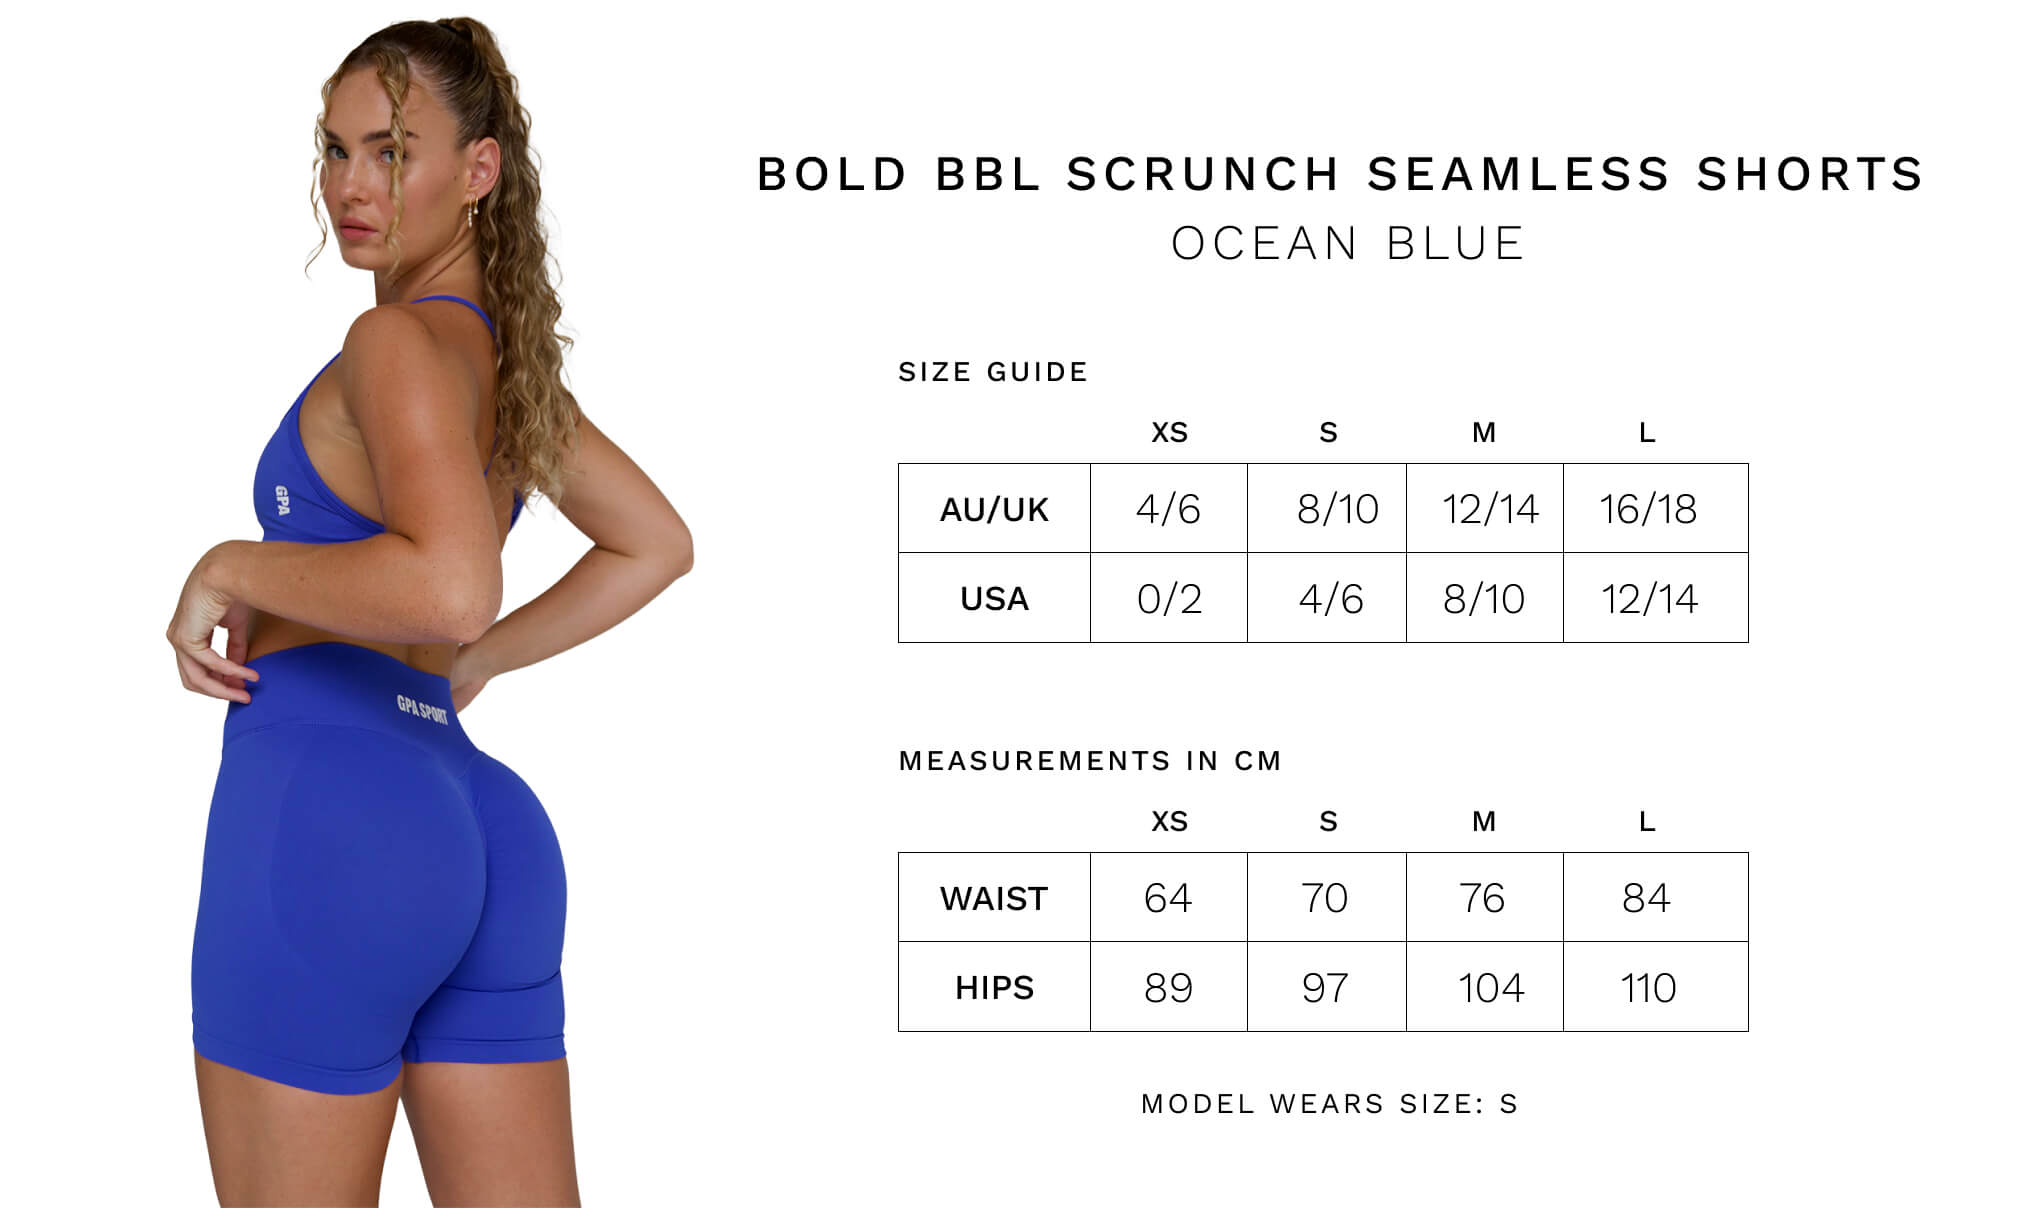 BOLD BBL SCRUNCH SEAMLESS SHORTS - OCEAN BLUE